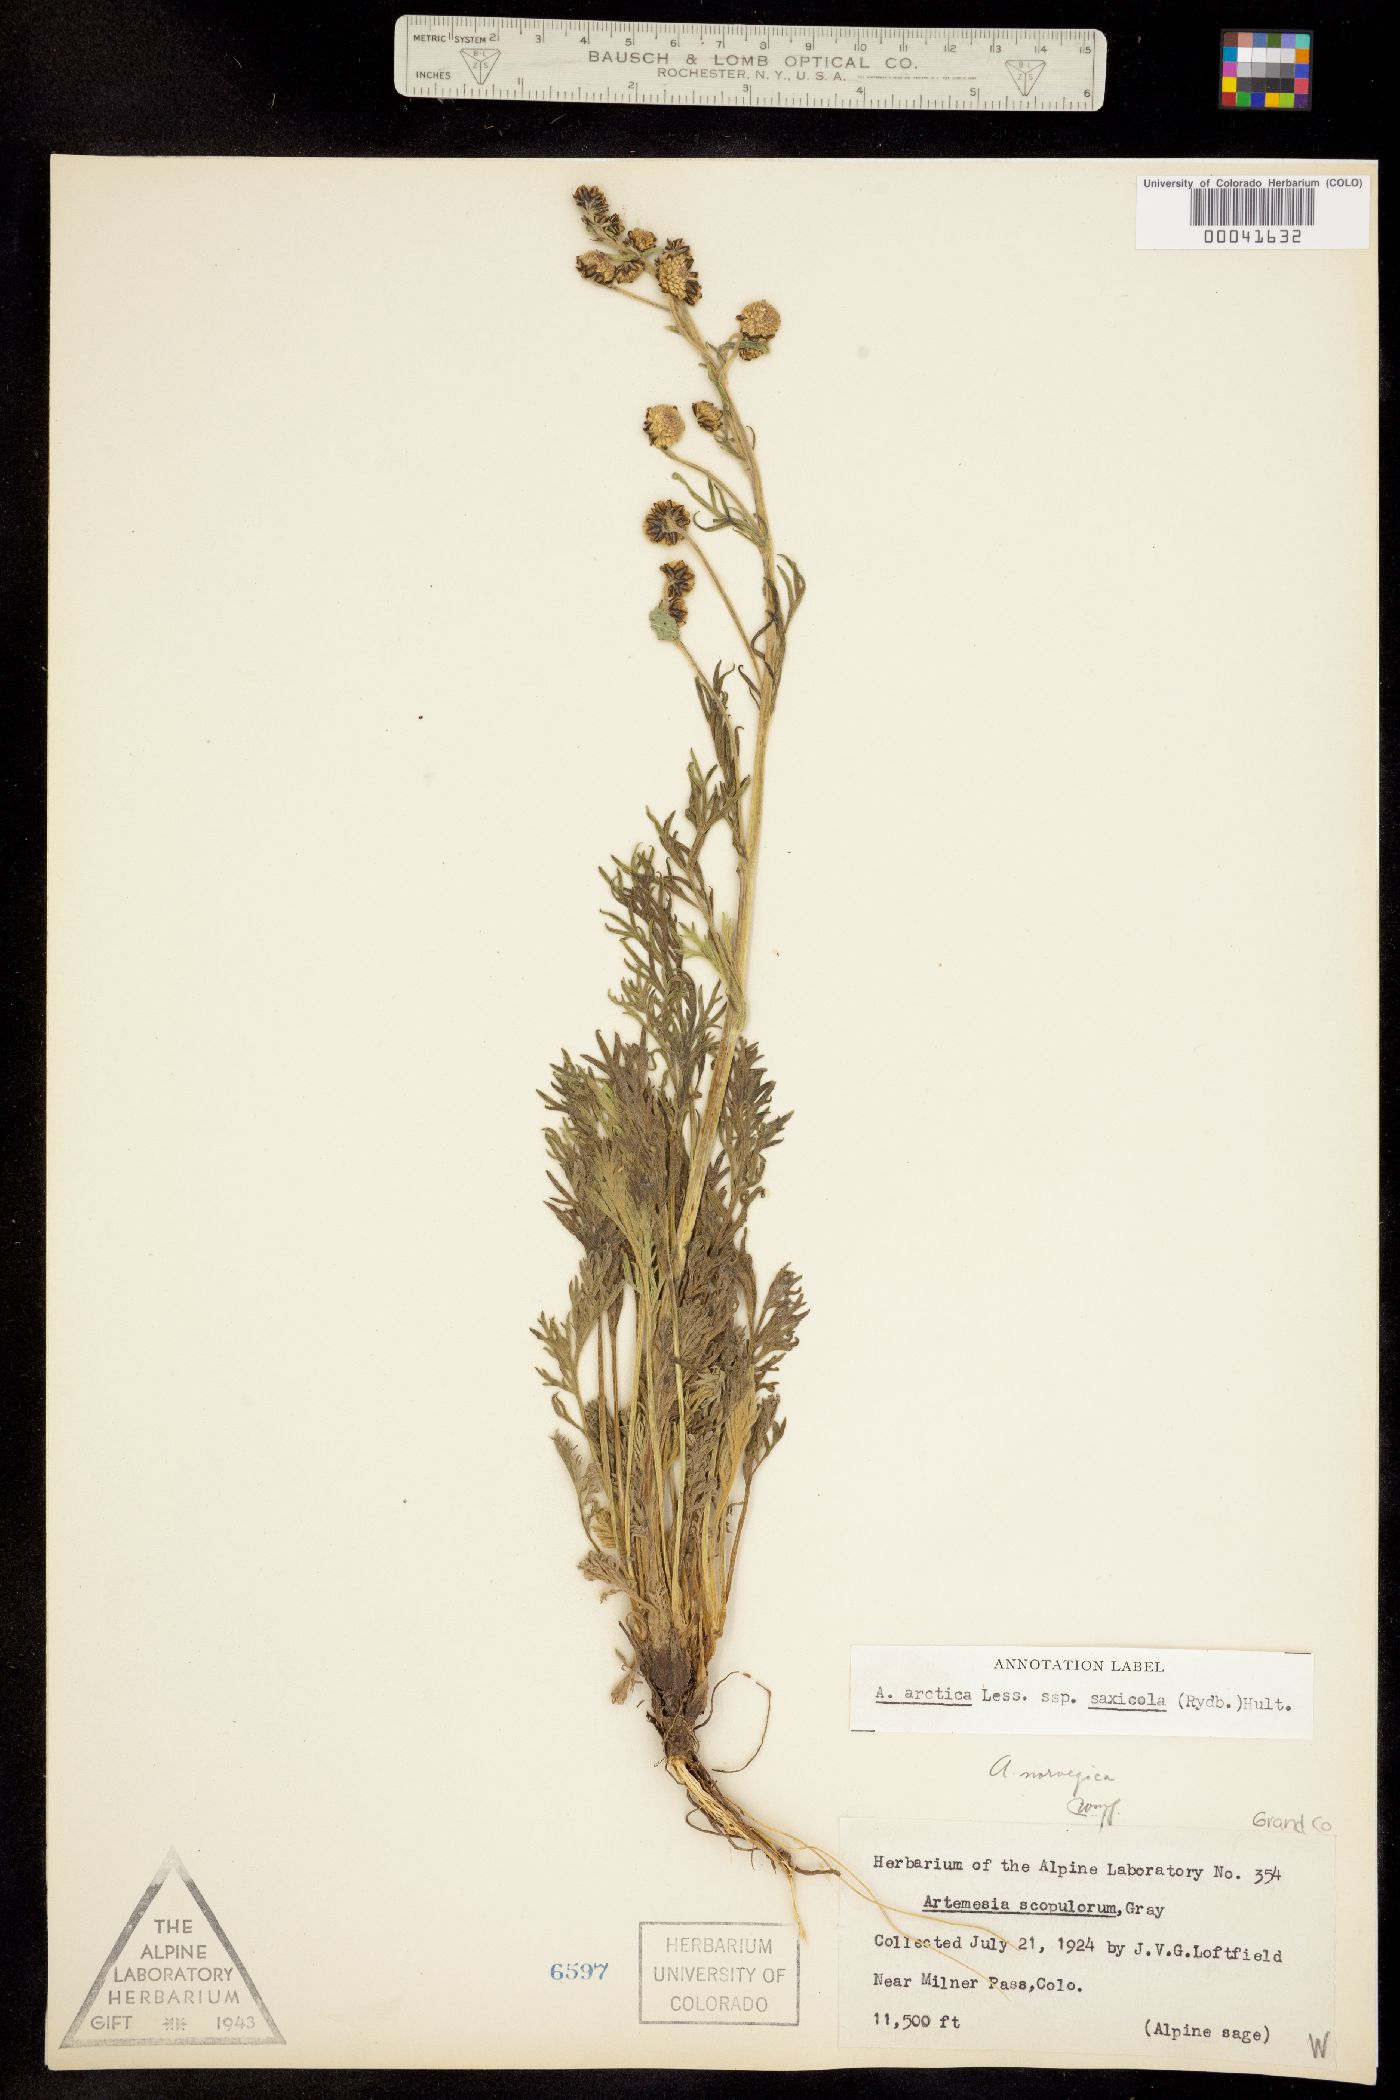 Artemisia arctica subsp. saxicola image